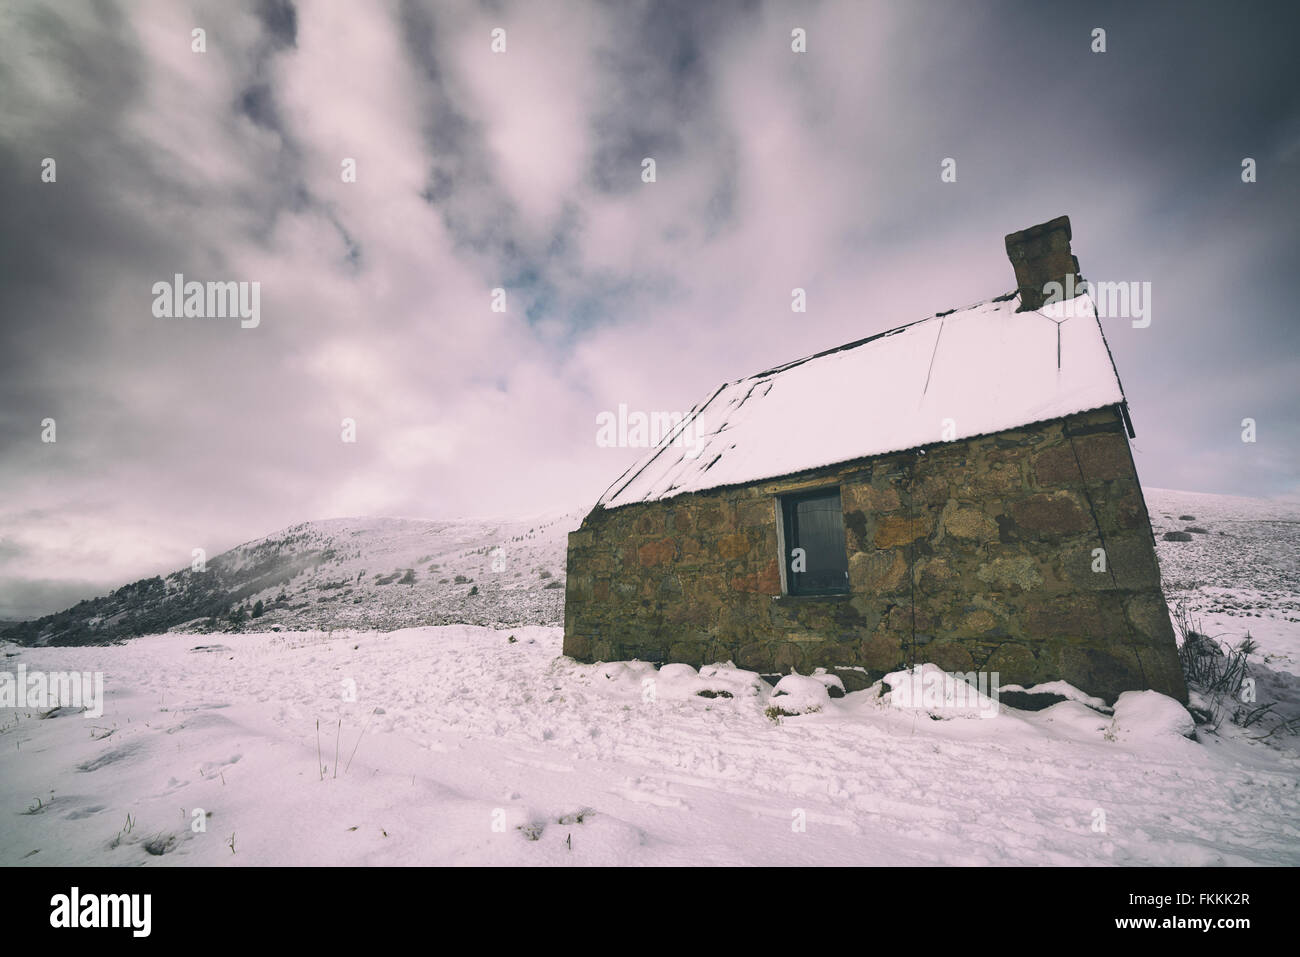 Ryvoan-Schutzhütte Cairngorms in den schottischen Highlands, UK. Zusätzlichen Maserung und Farbe Styling. Stockfoto